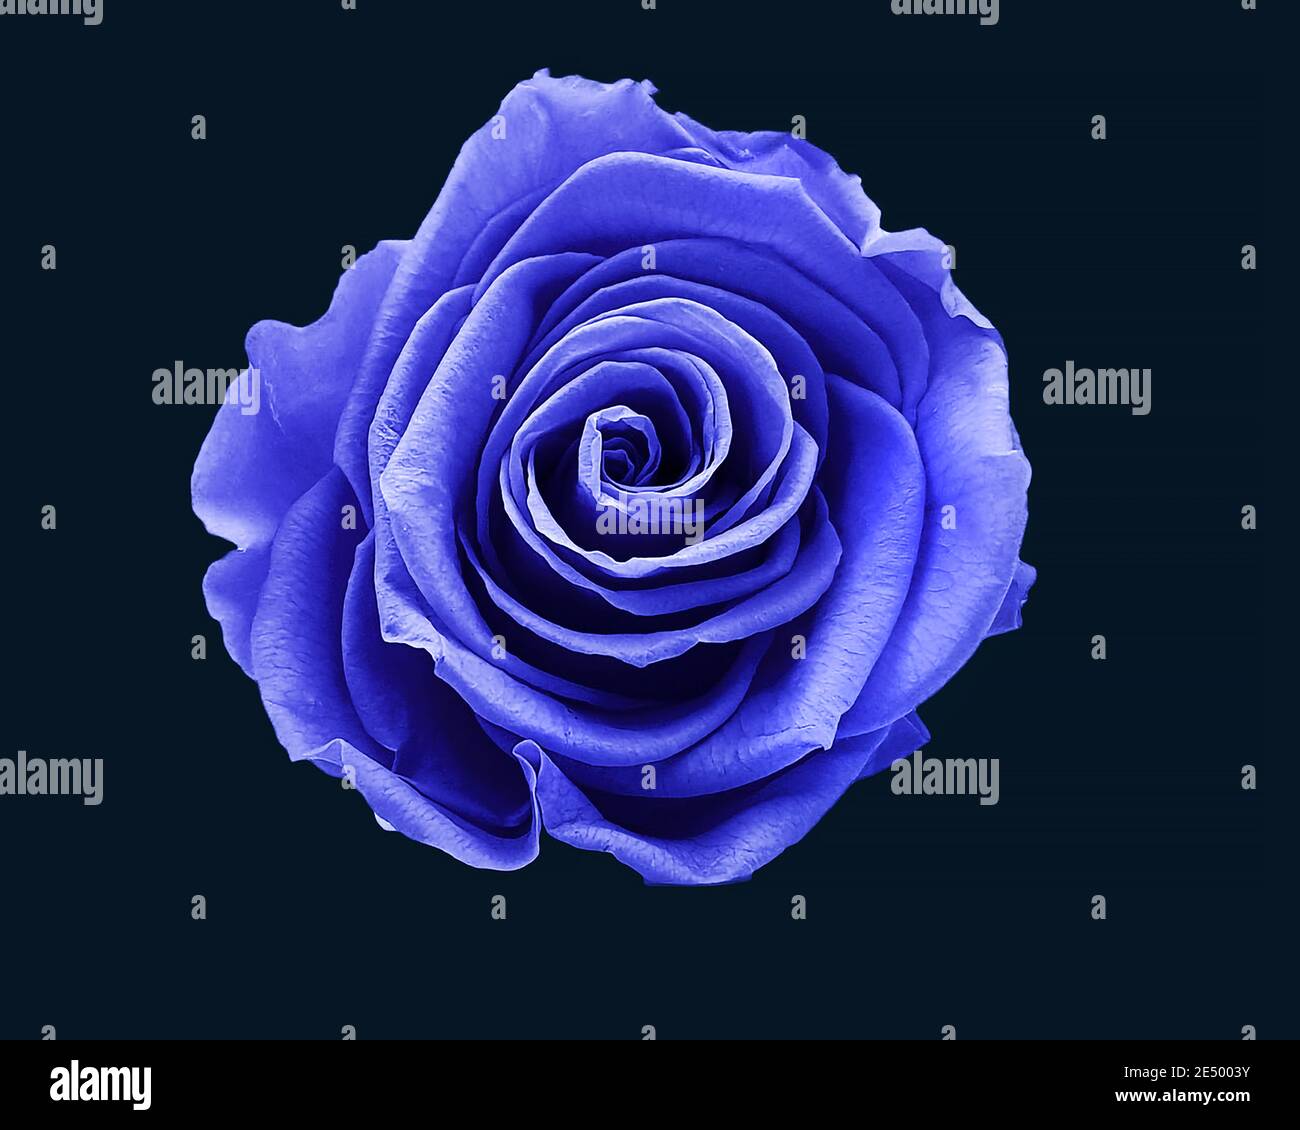 Wunderbare blaue Rosen für den Tag der Liebe, valentinstag  Stock-Vektorgrafik - Alamy